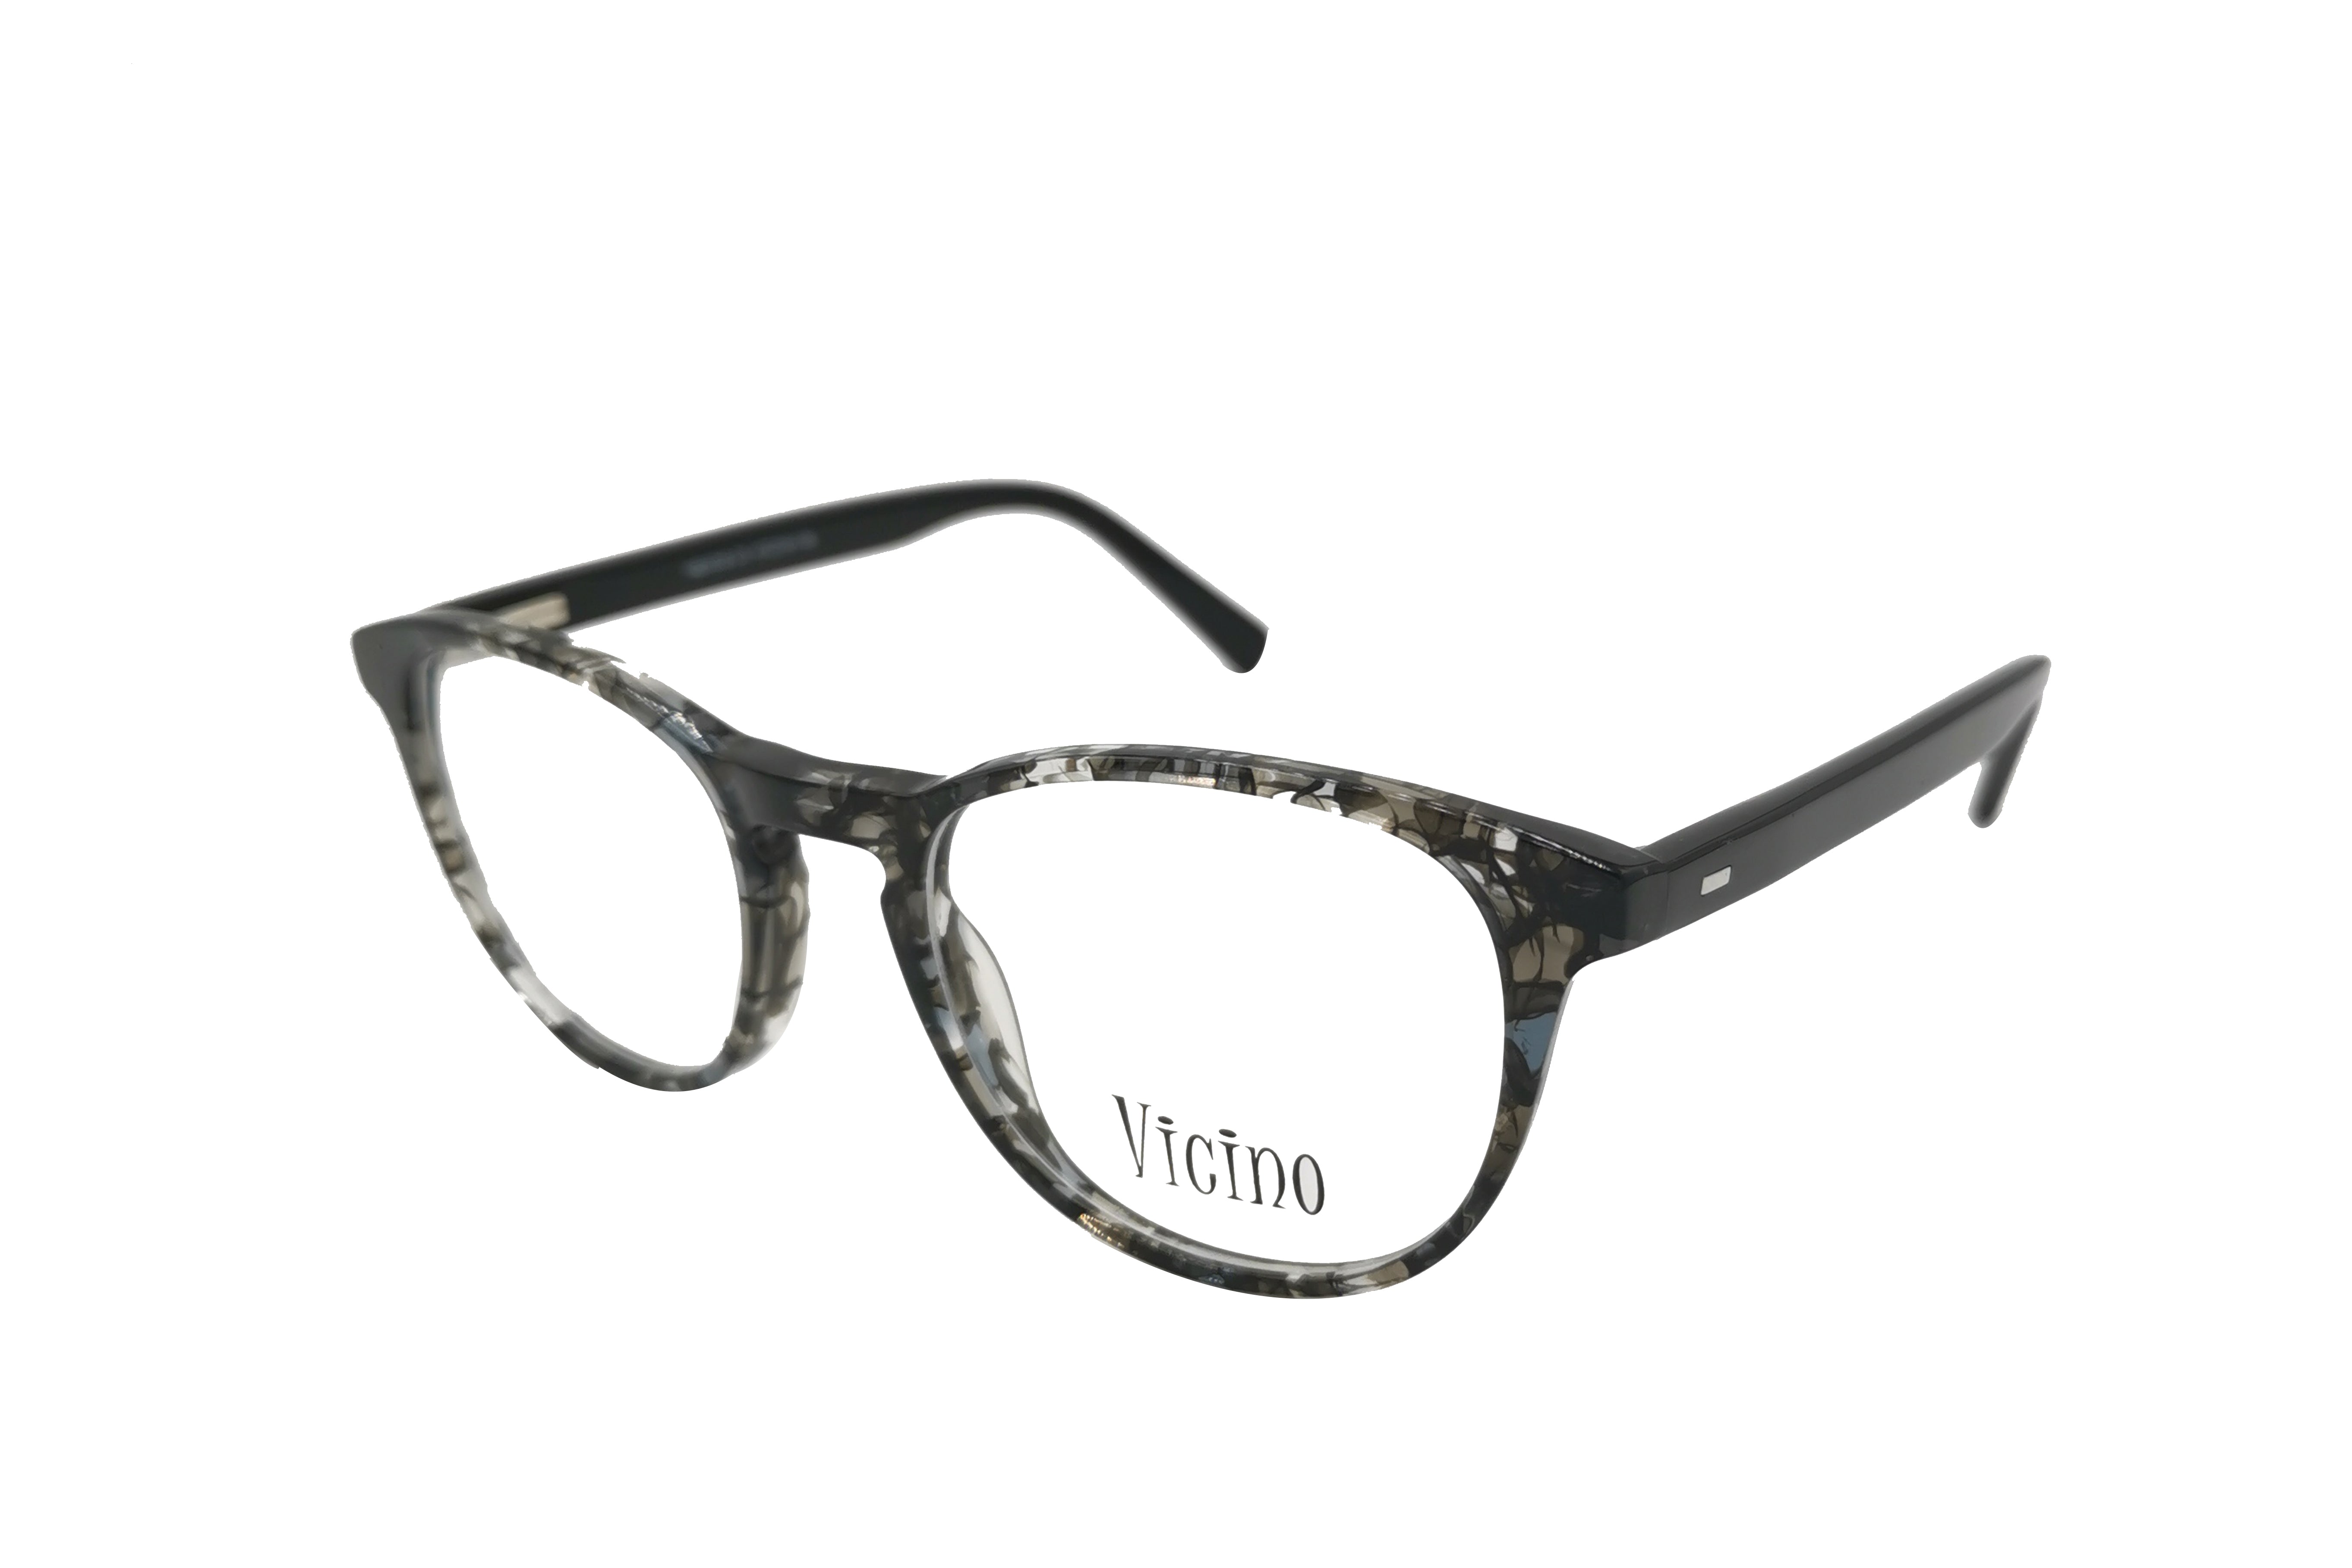 NS Deluxe - 1018 - Black Tortoise - Eyeglasses